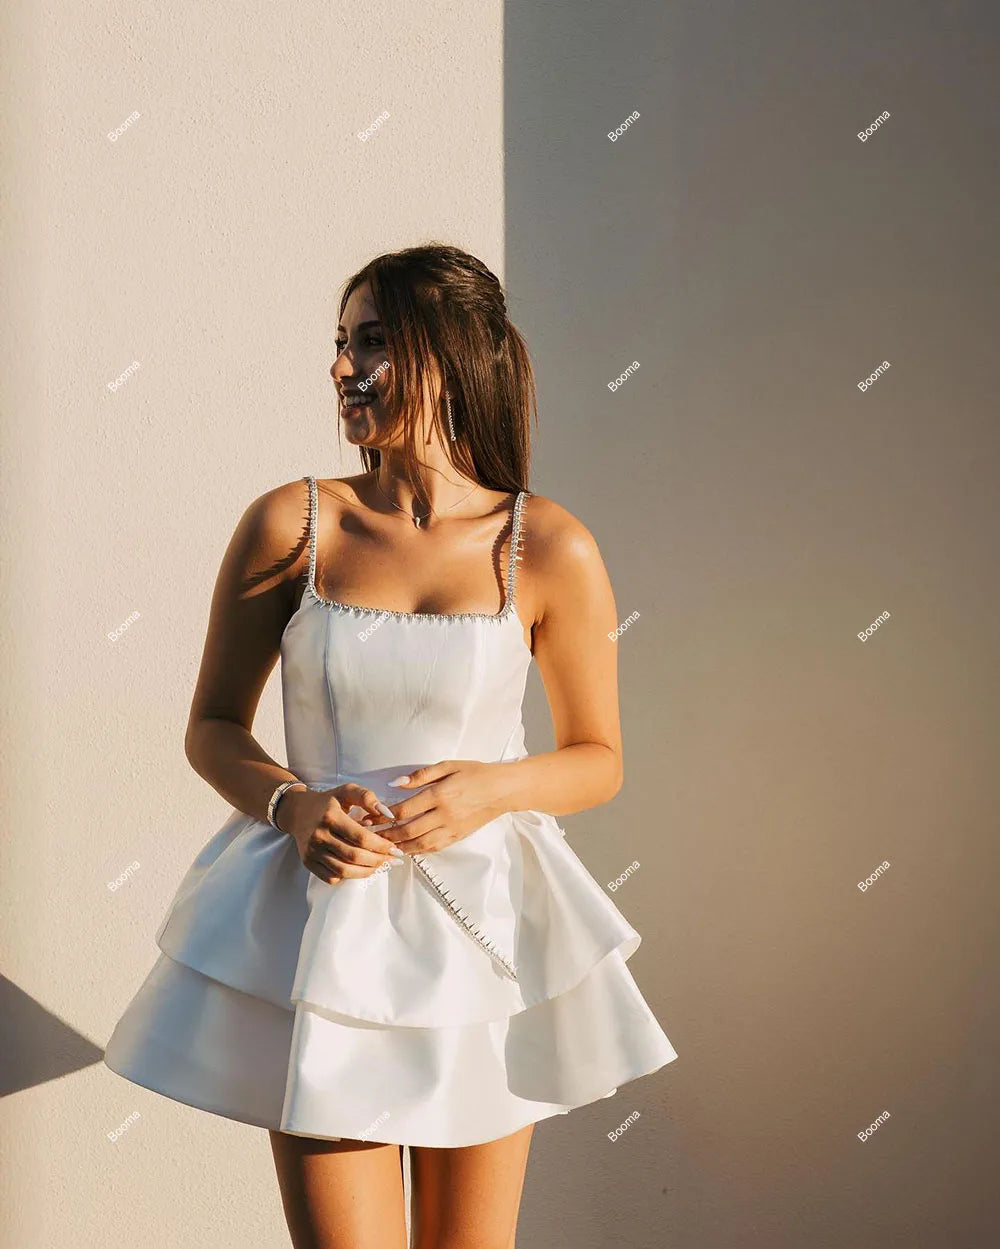 Mini Hochzeitsfeier Kleider ärmellose Kristall Kurzbraut Kleid mit Buggeräte gestufte Färbe -Promkleider für Frauen maßgeschneidert